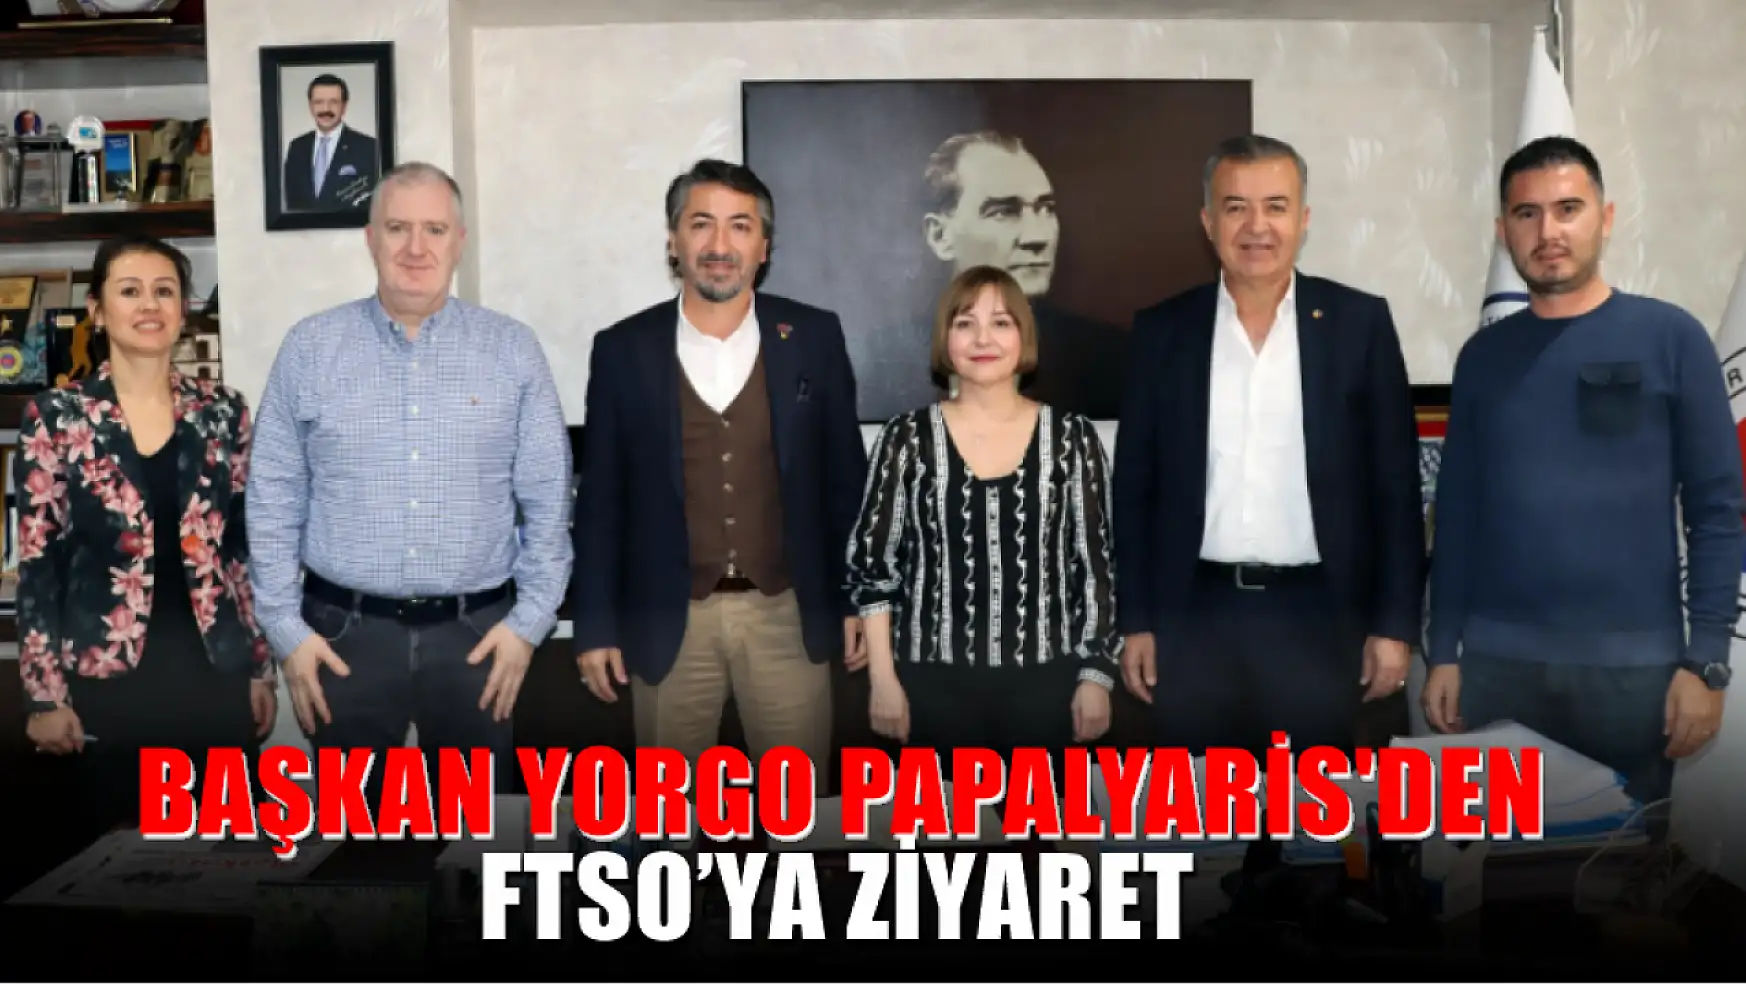 Başkan Yorgo Papalyaris'den FTSO'ya ziyaret